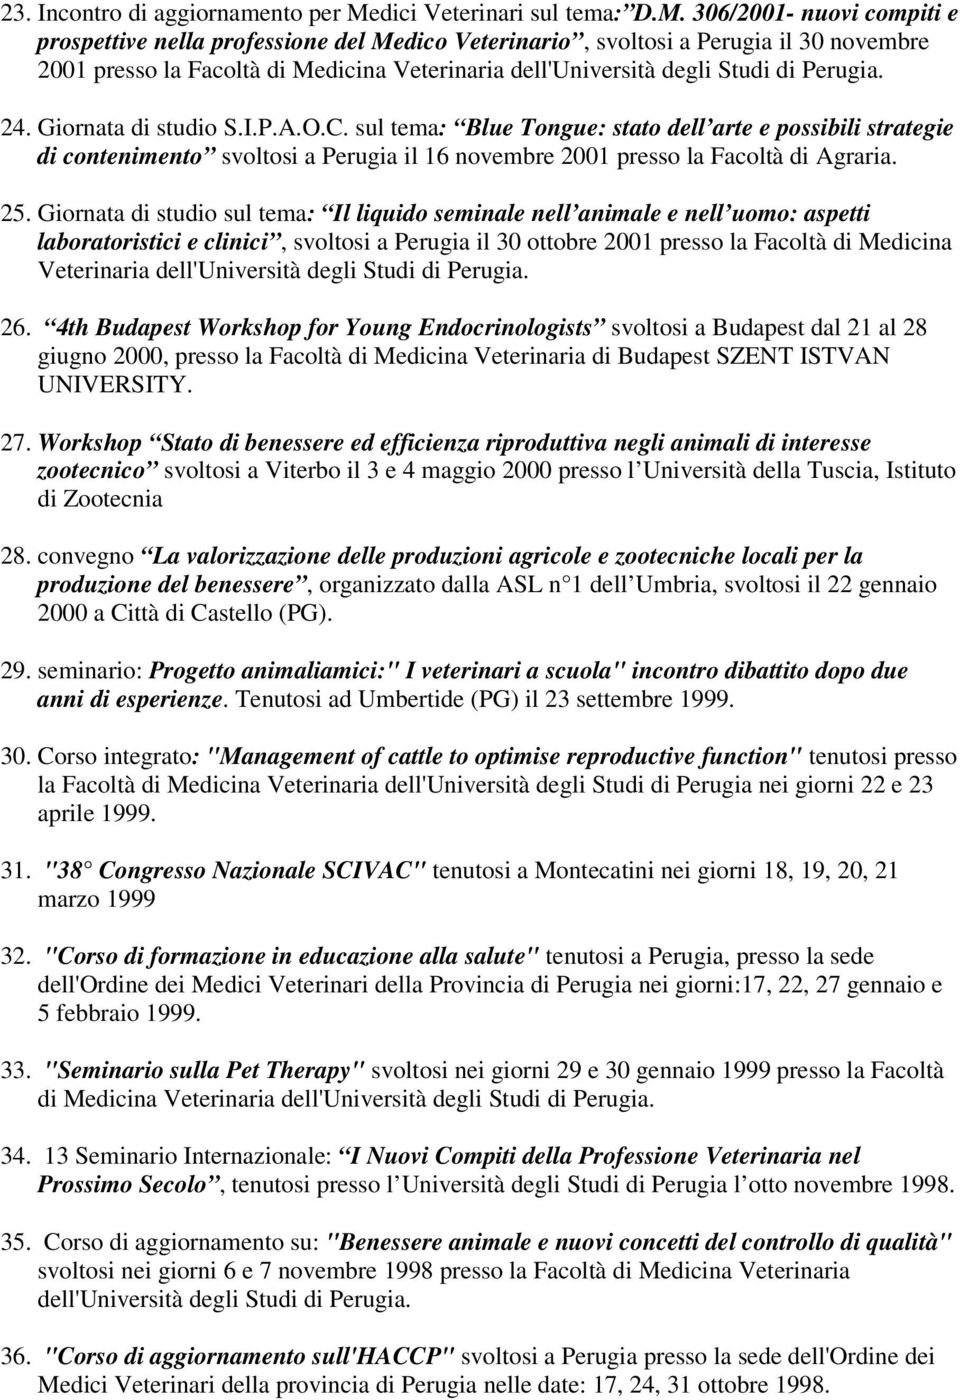 306/2001- nuovi compiti e prospettive nella professione del Medico Veterinario, svoltosi a Perugia il 30 novembre 2001 presso la Facoltà di Medicina Veterinaria dell'università degli Studi di Perugia.